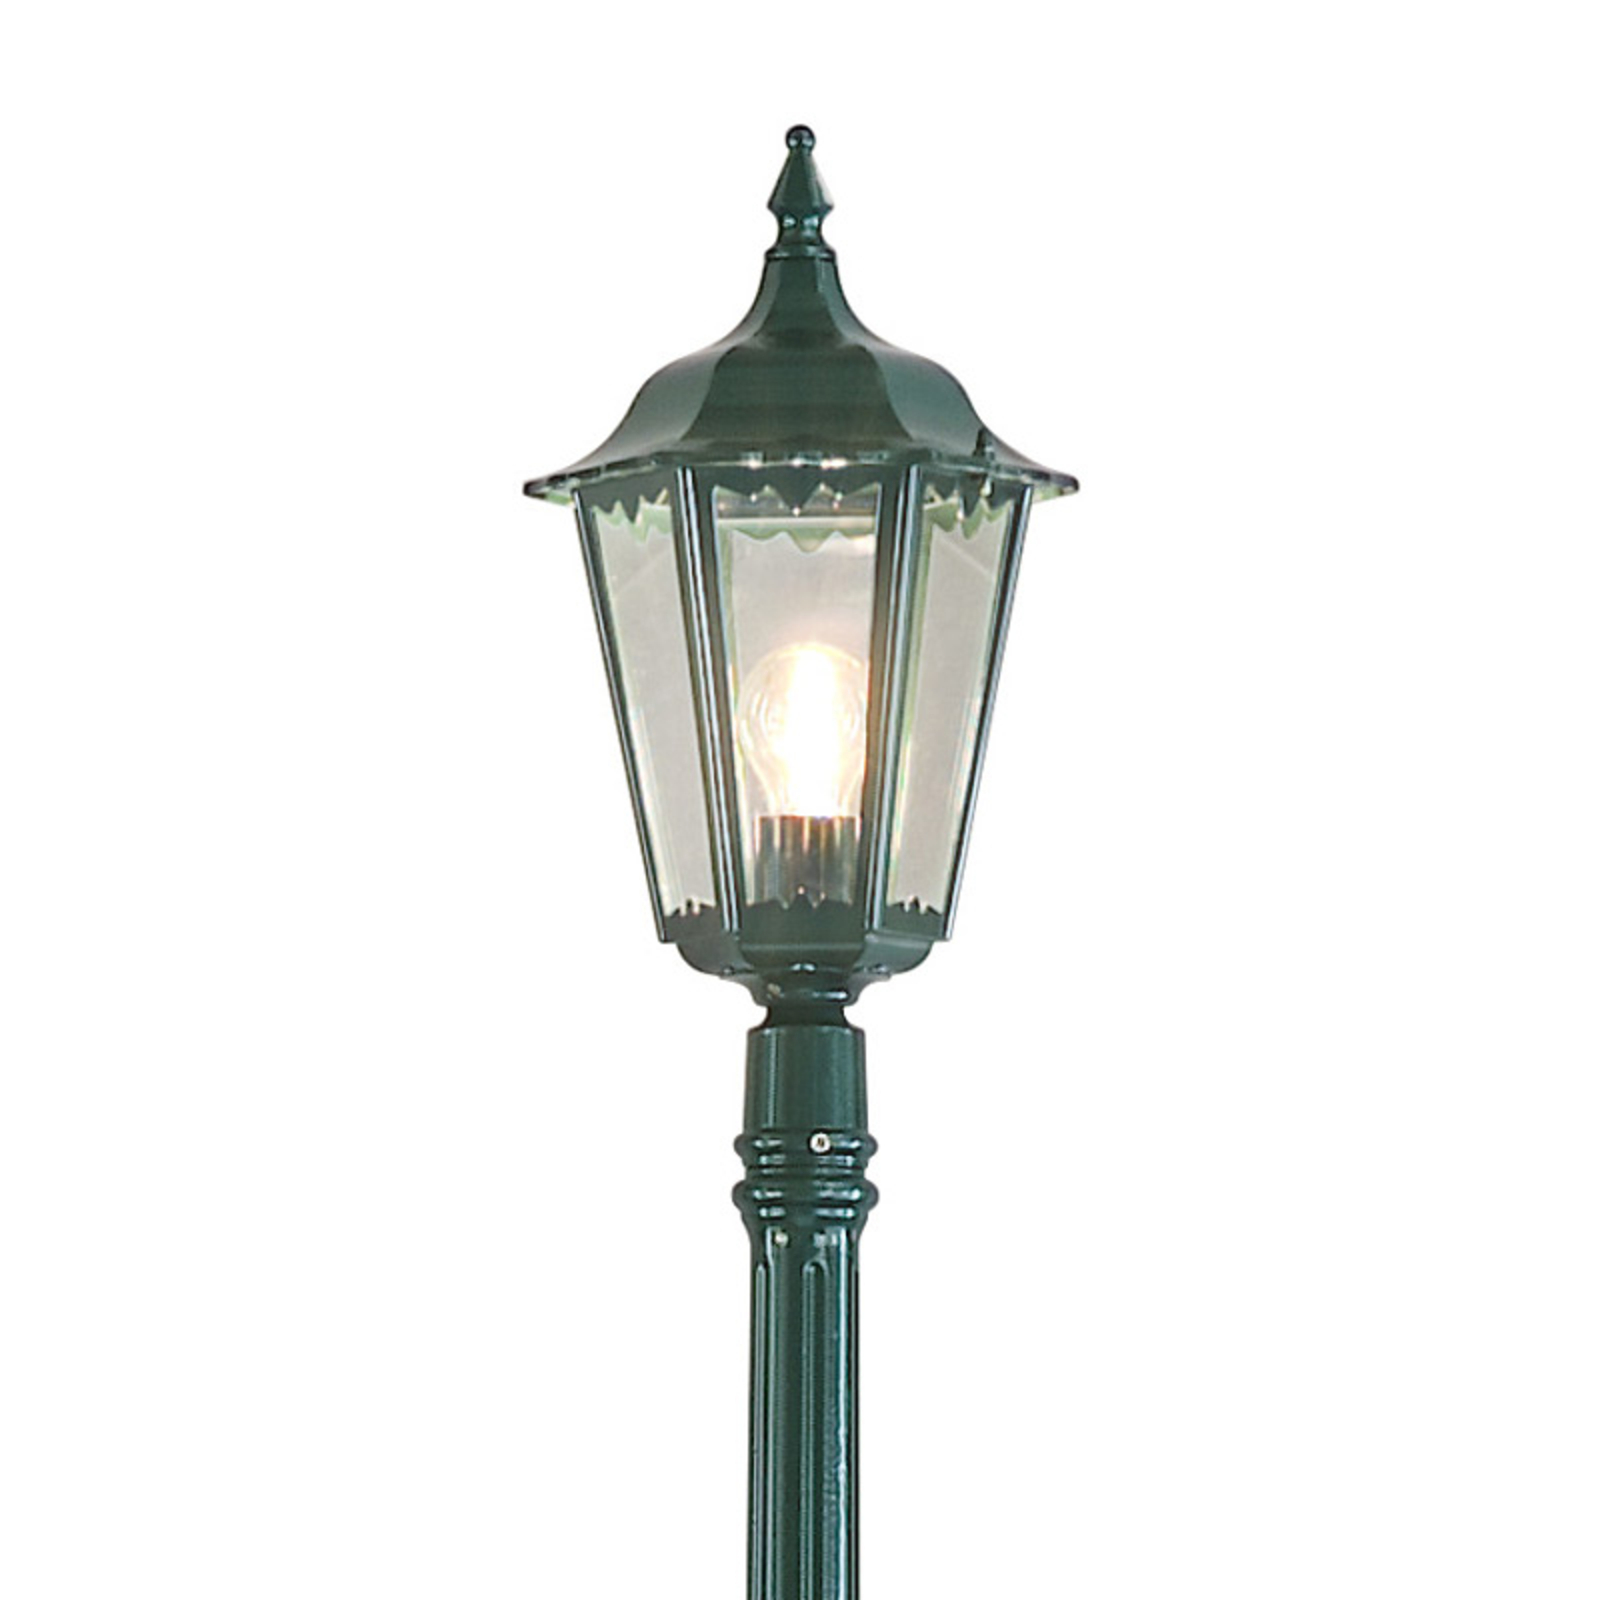 Jarbolno svjetlo Firenze, 1 žarulja, zelena